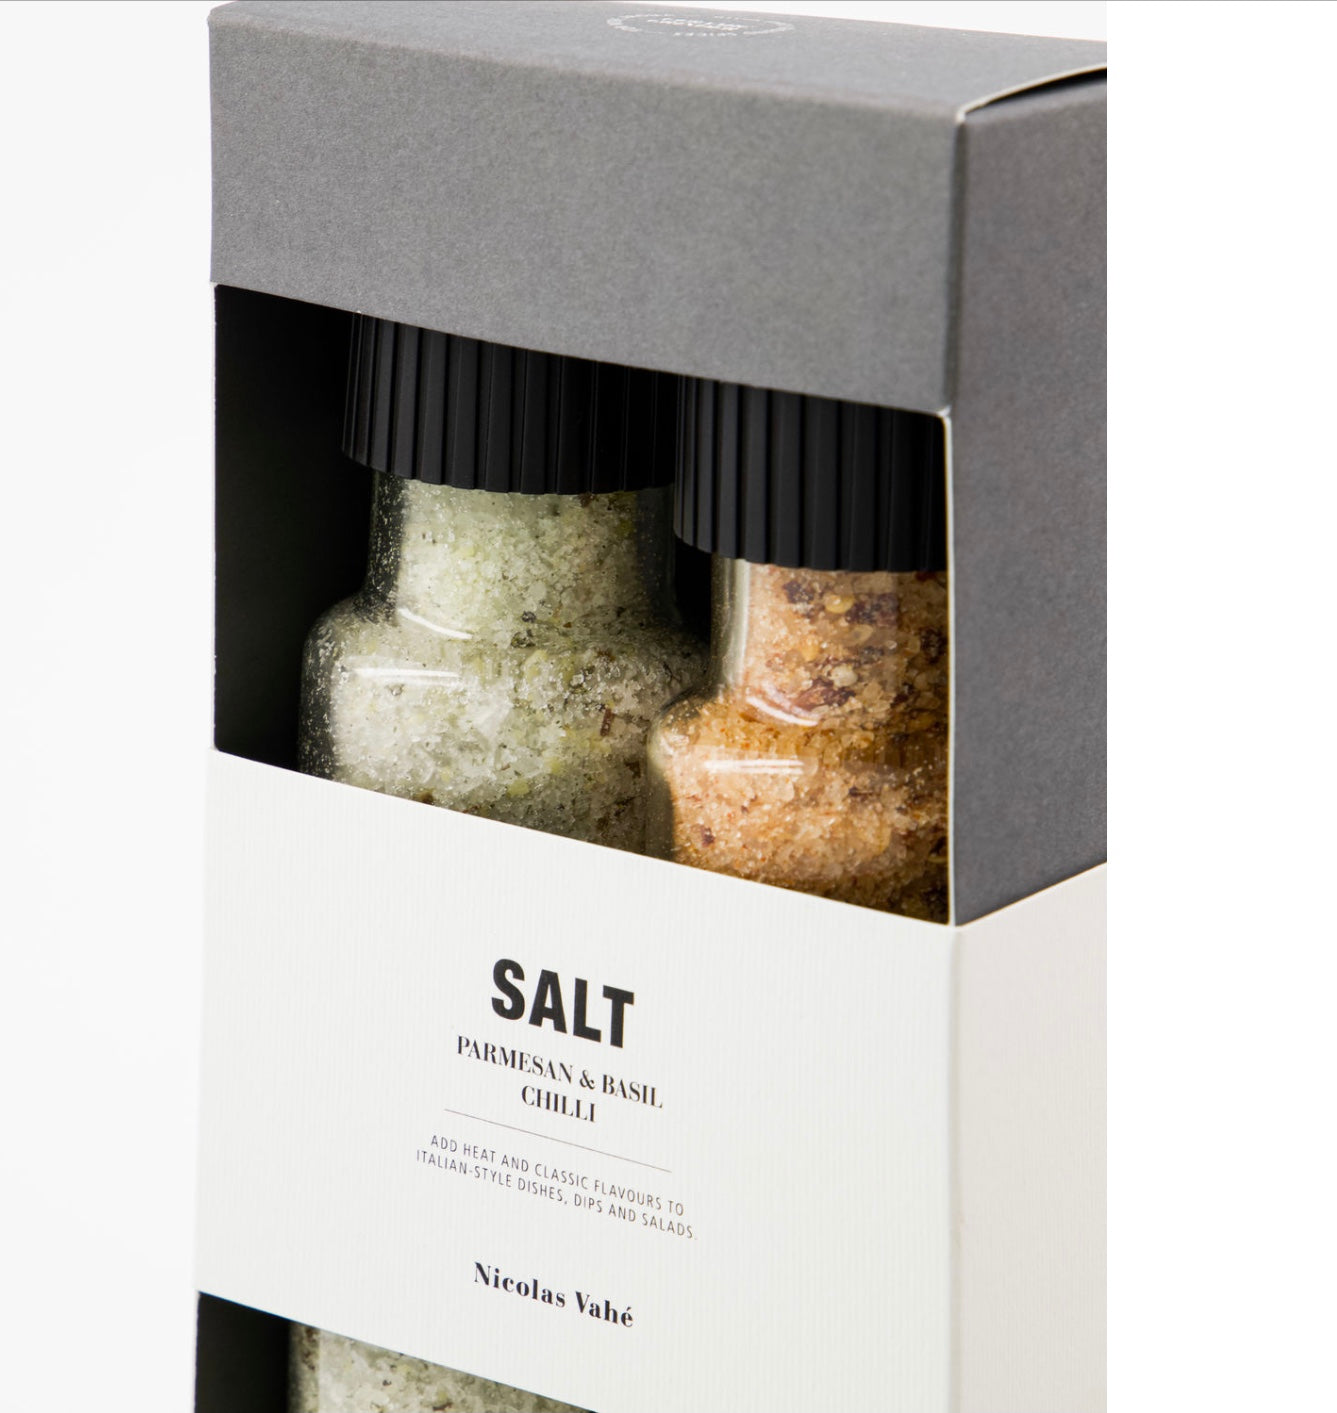 GIFT BOX, PARMESAN & BASIL SALT & CHILLI SALT